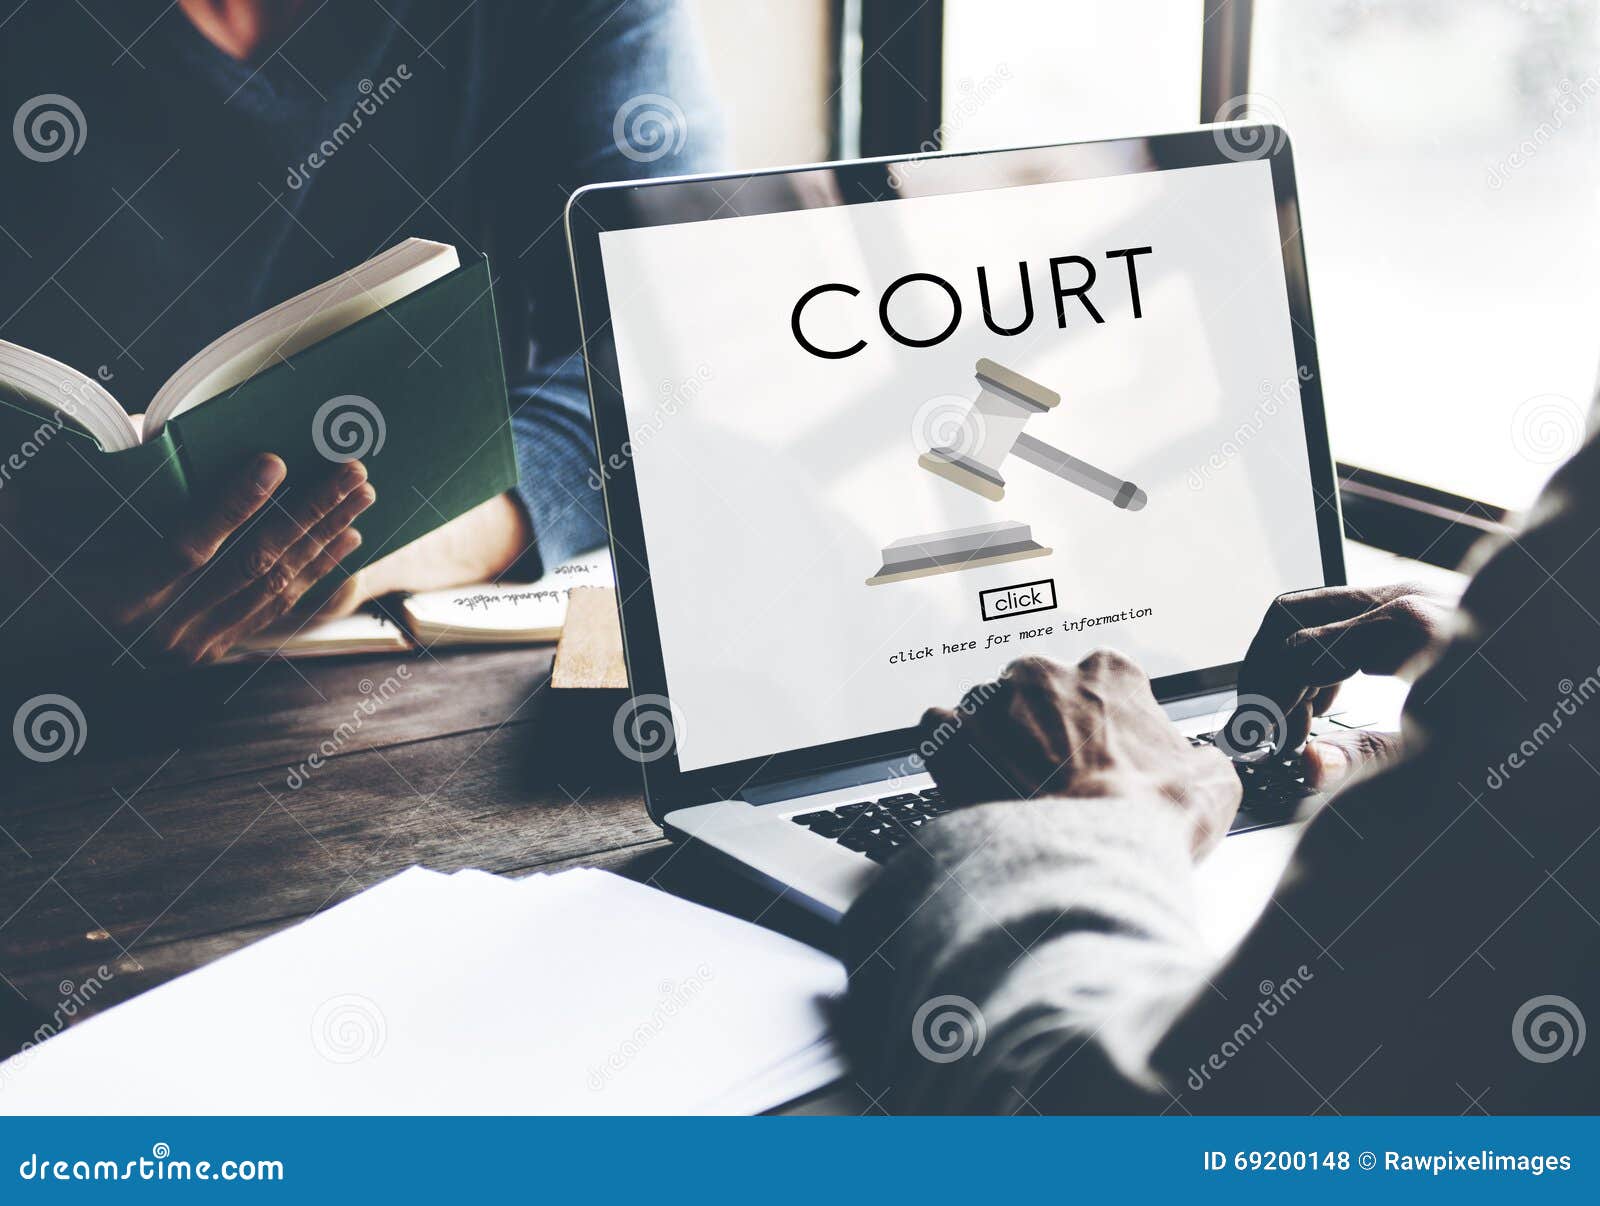 court authority crime judge law legal order concept